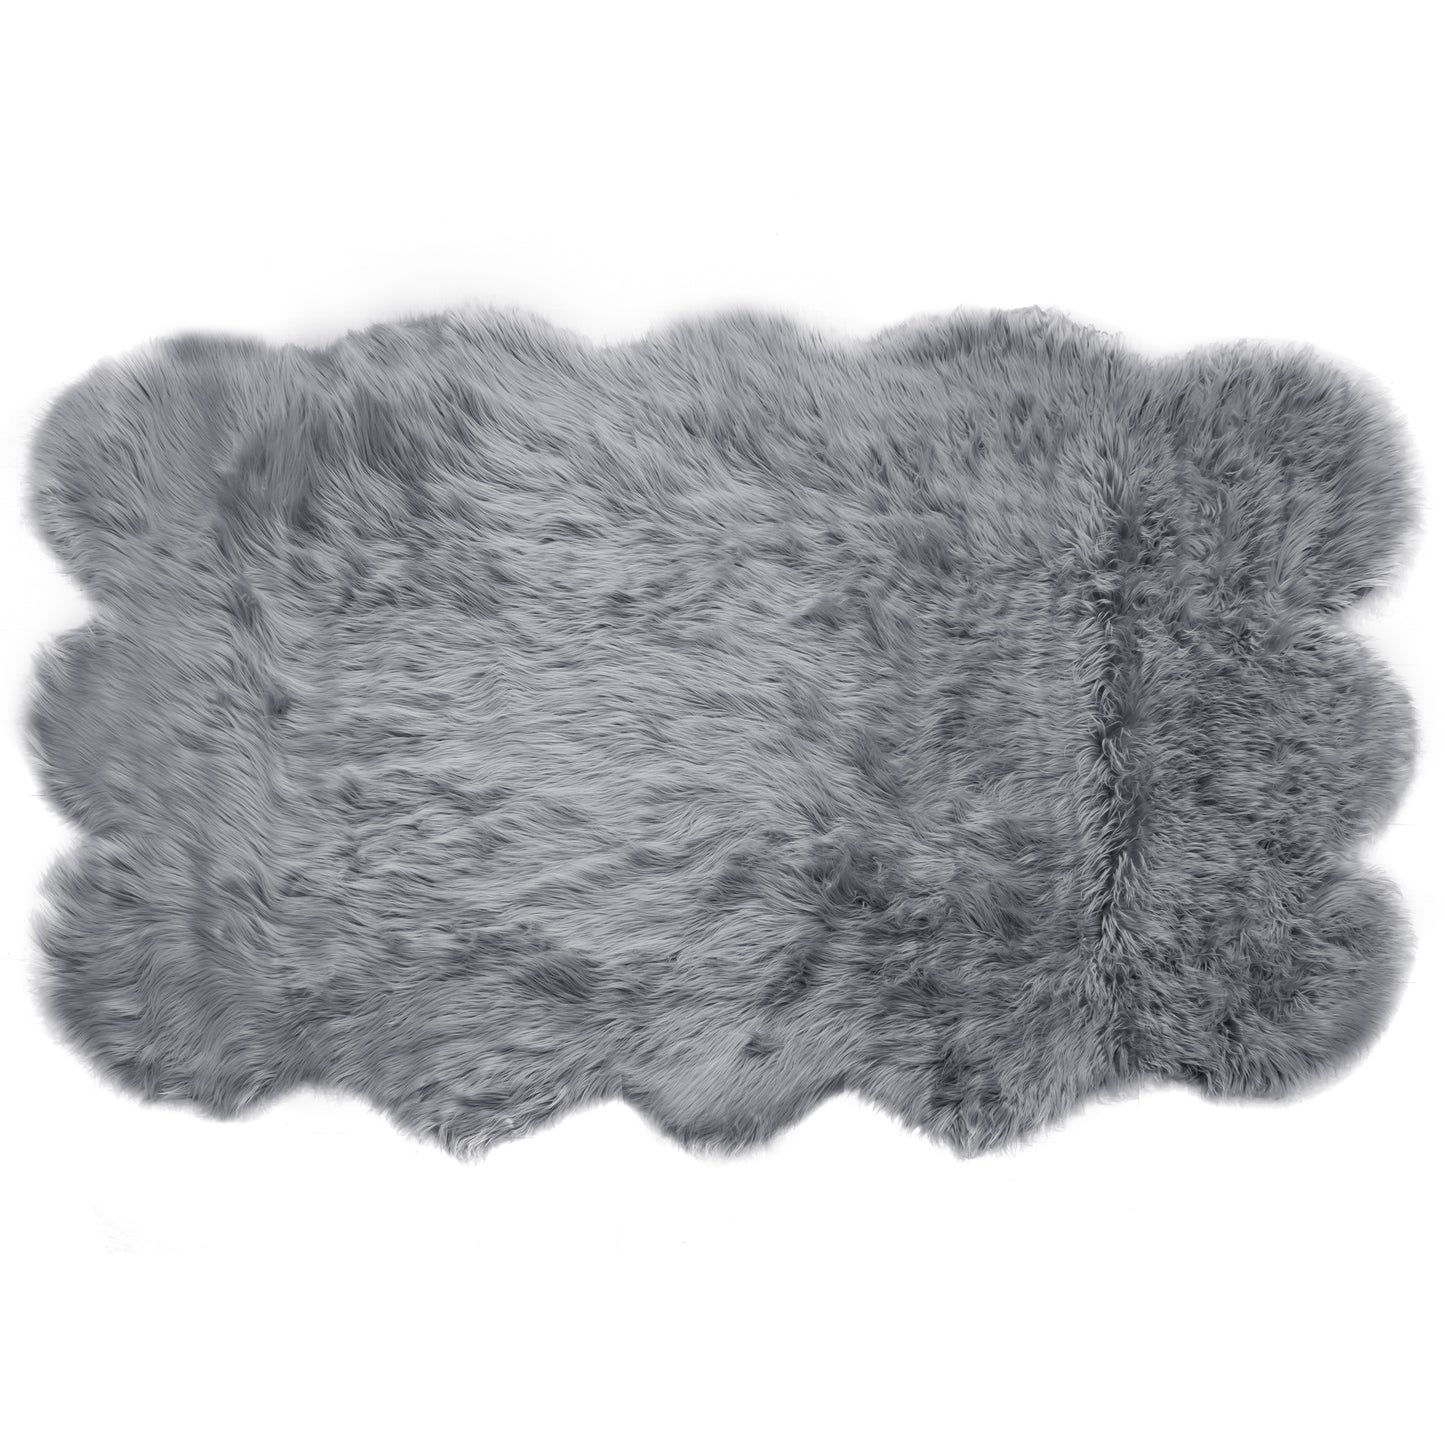 Ailsa Faux Sheepskin Fur Area Rug Runner Sheepskin-like Shape Grey 8x5